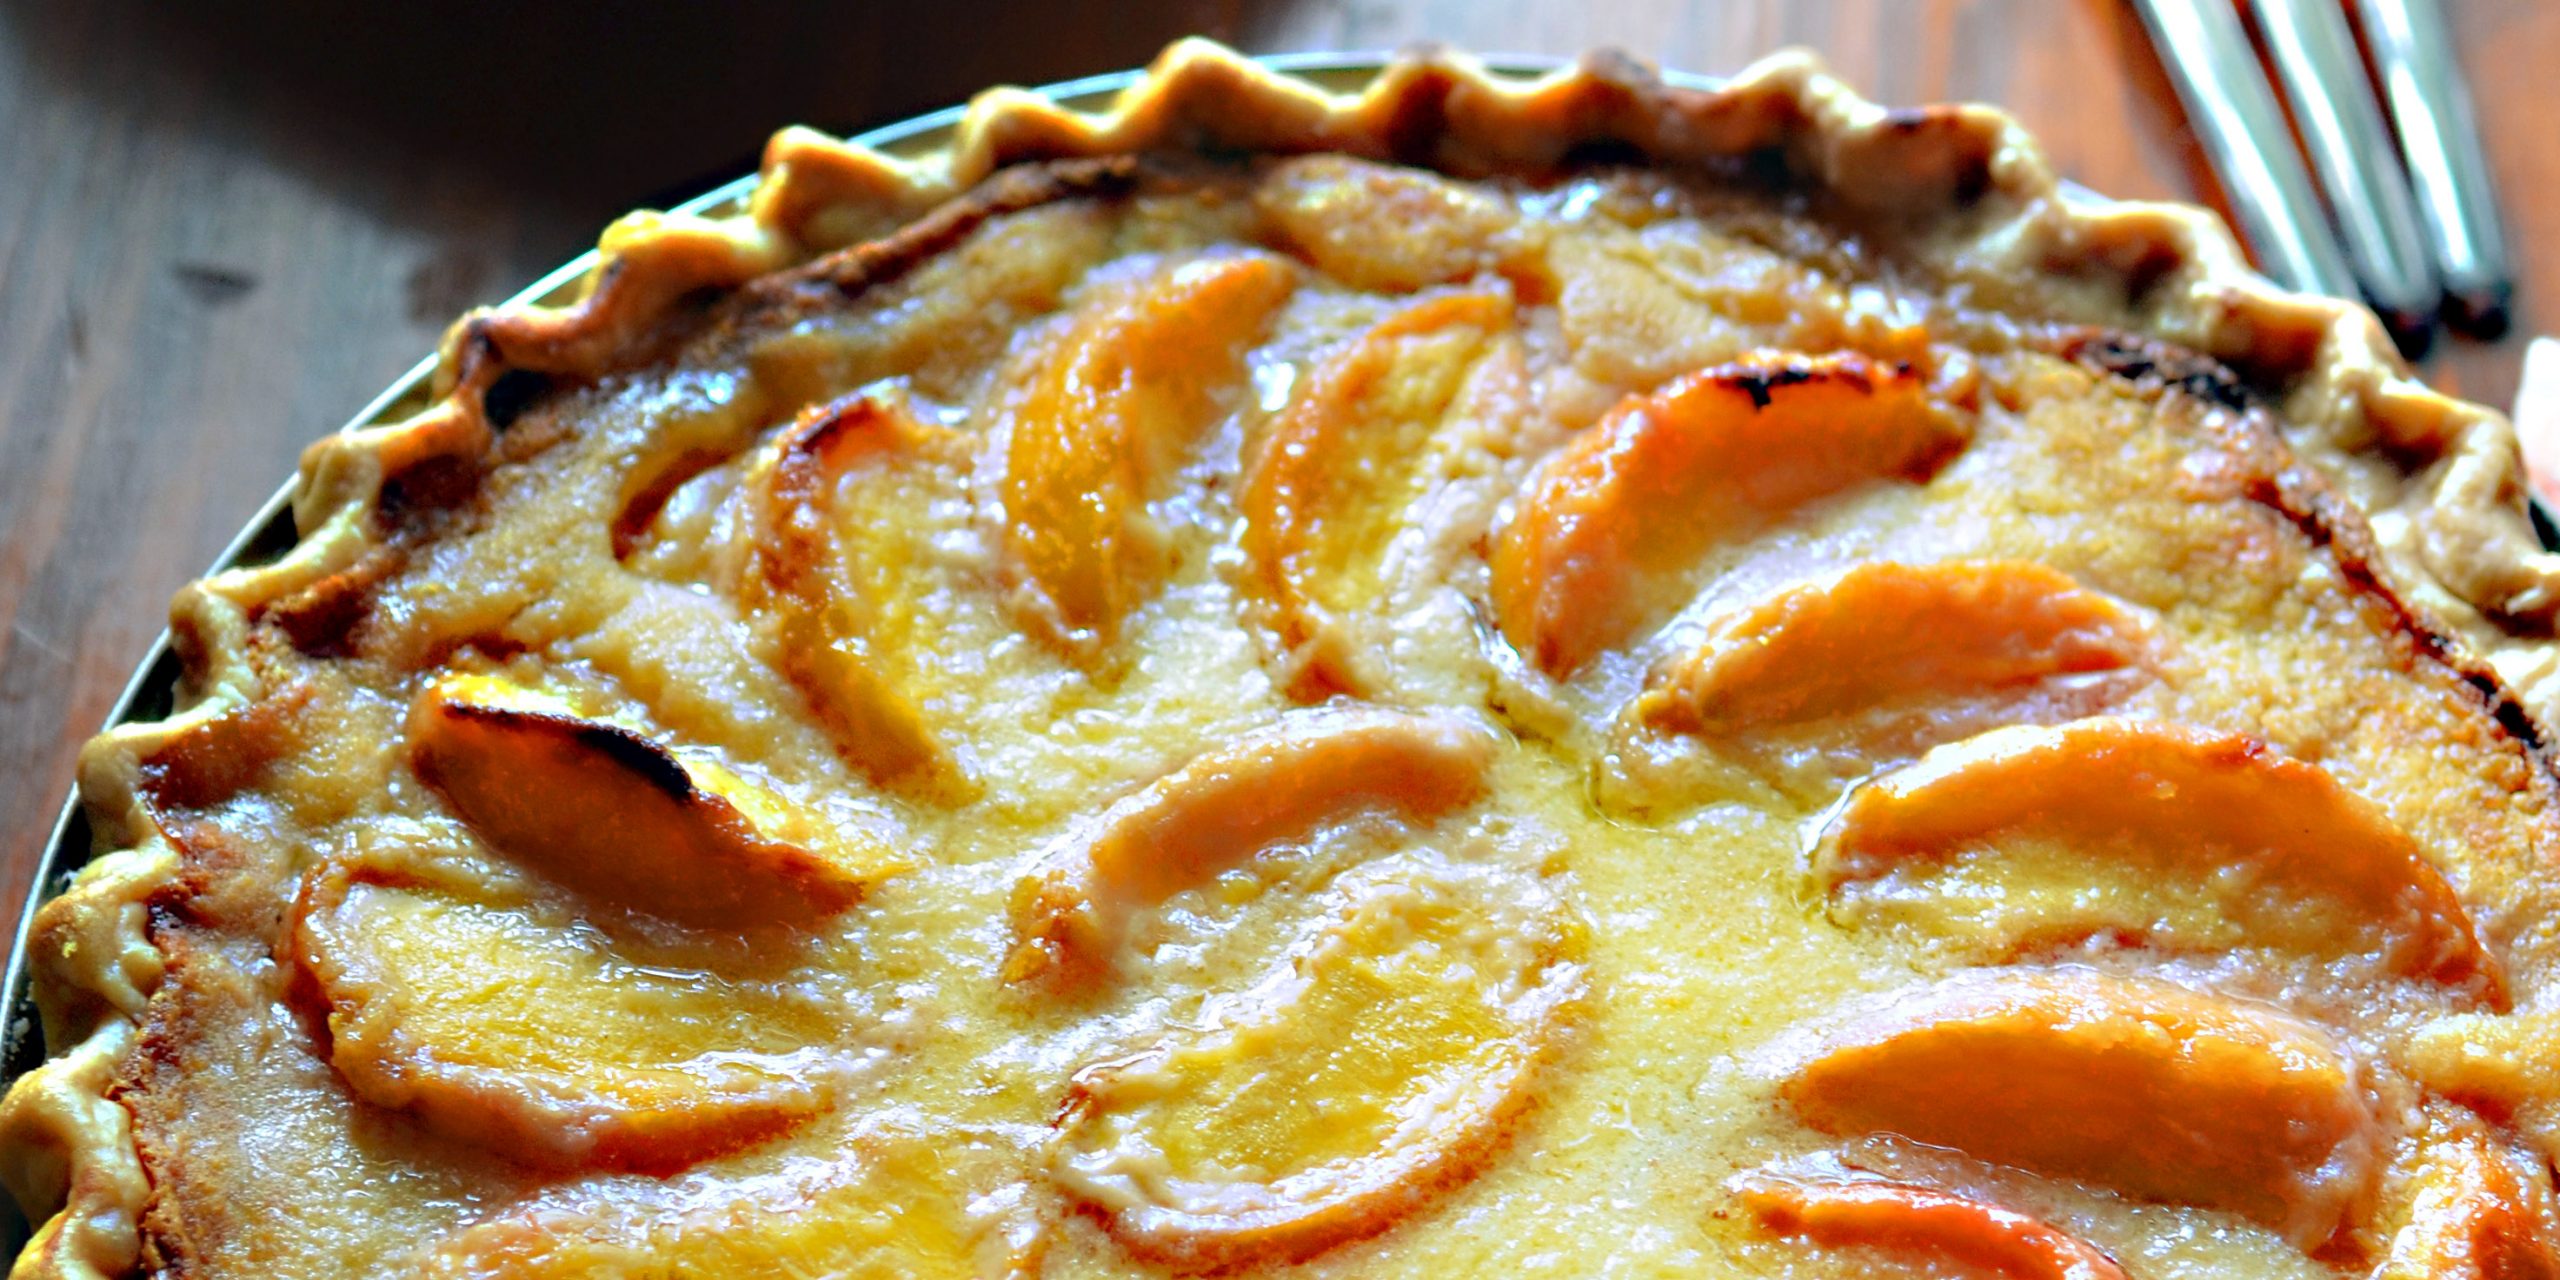 Sour Cream Peach Pie - Andrew Zimmern